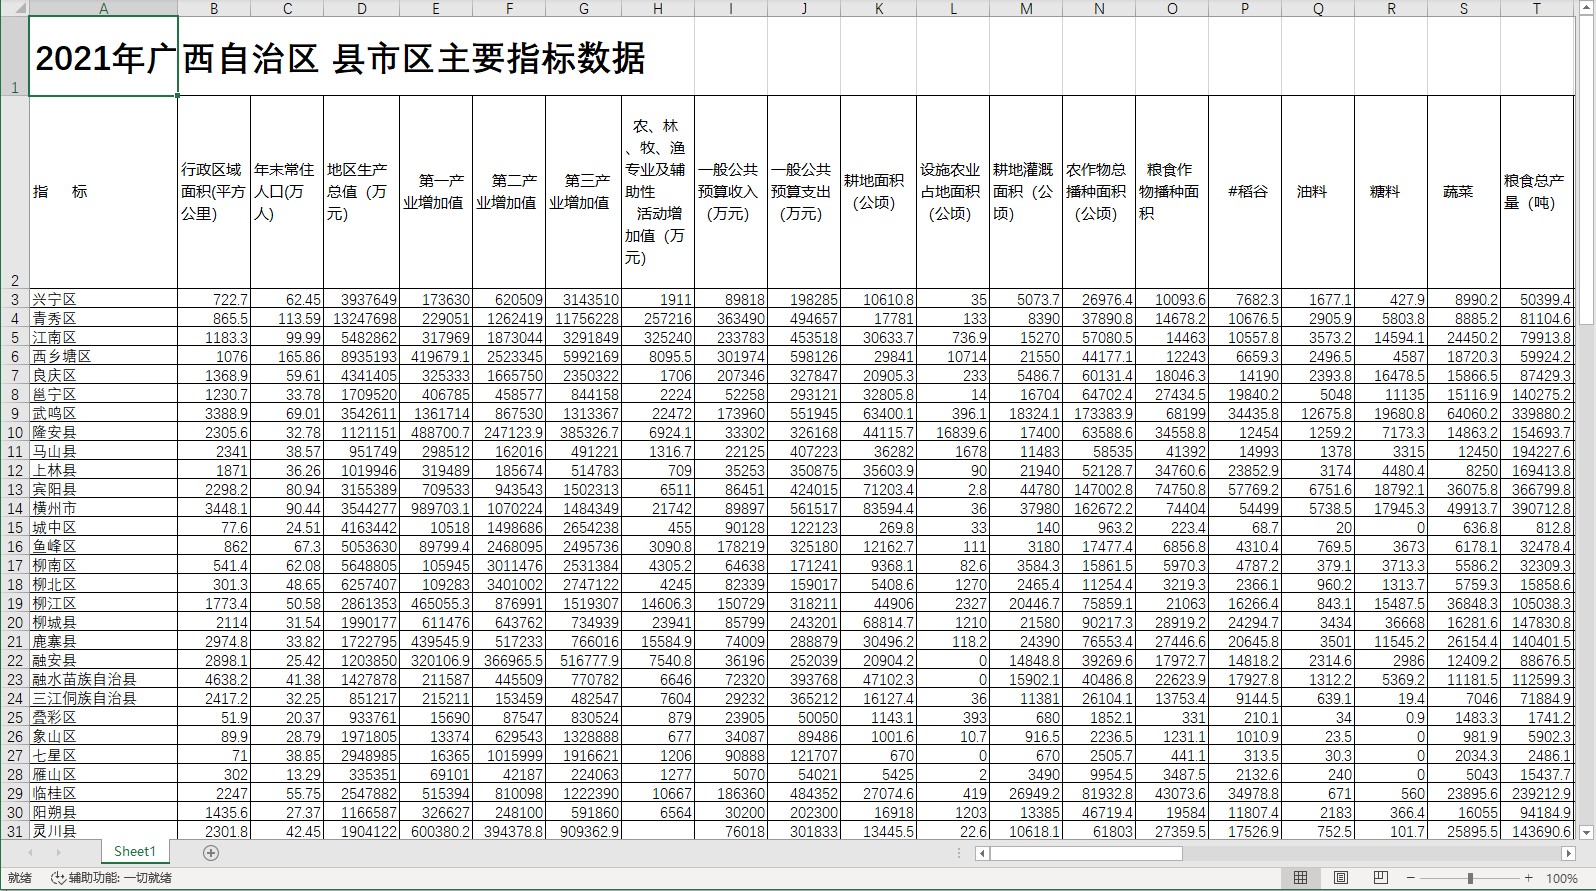 2021年广西自治区县市区主要指标统计数据